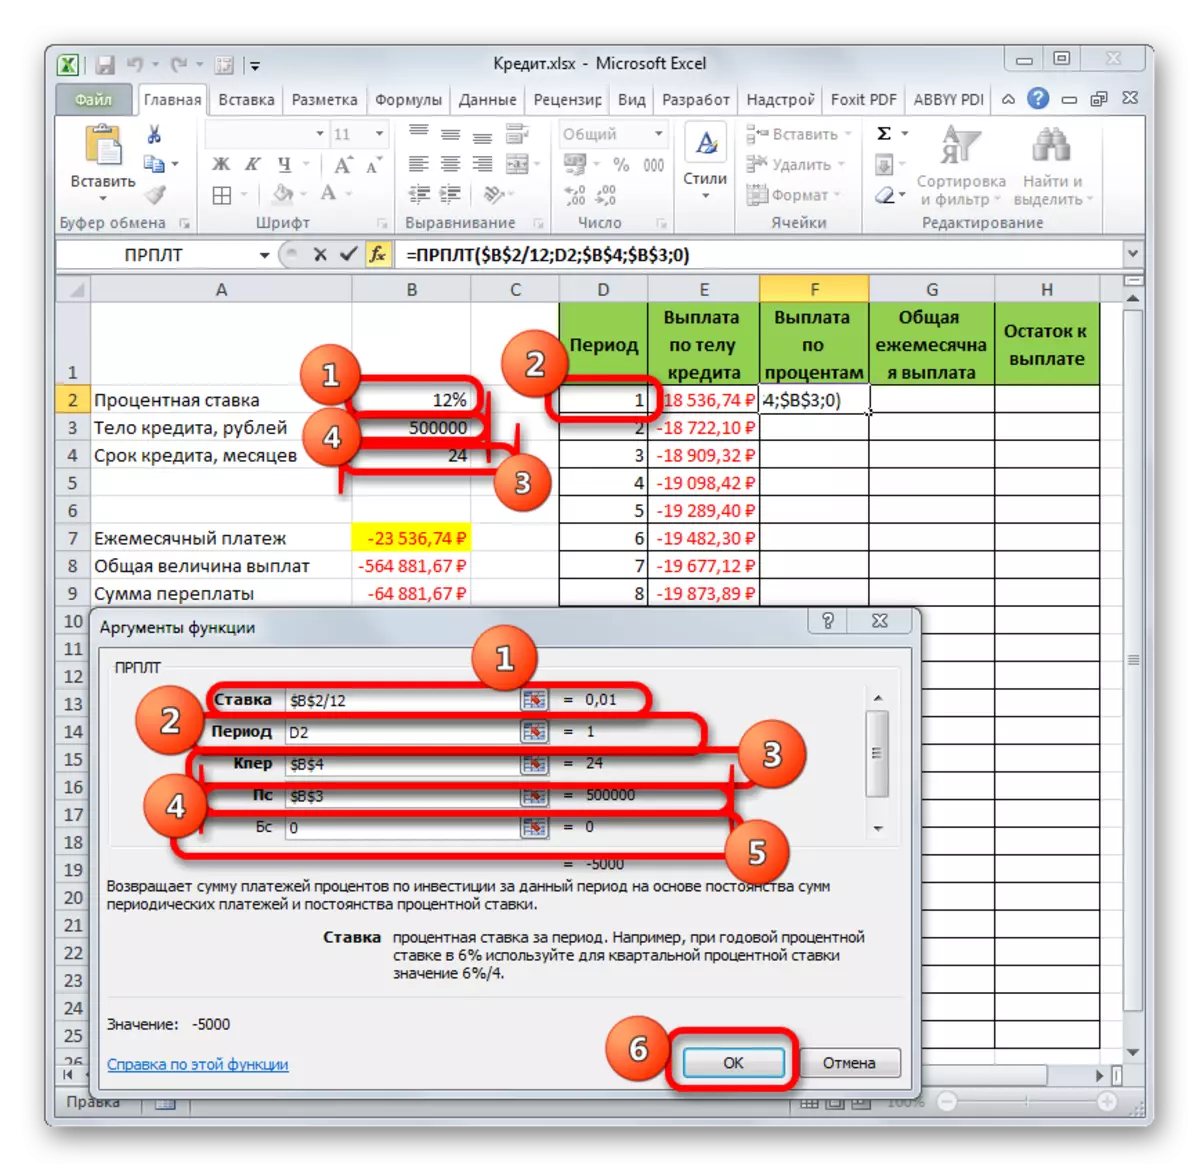 Arguments de la funció CPULT a Microsoft Excel